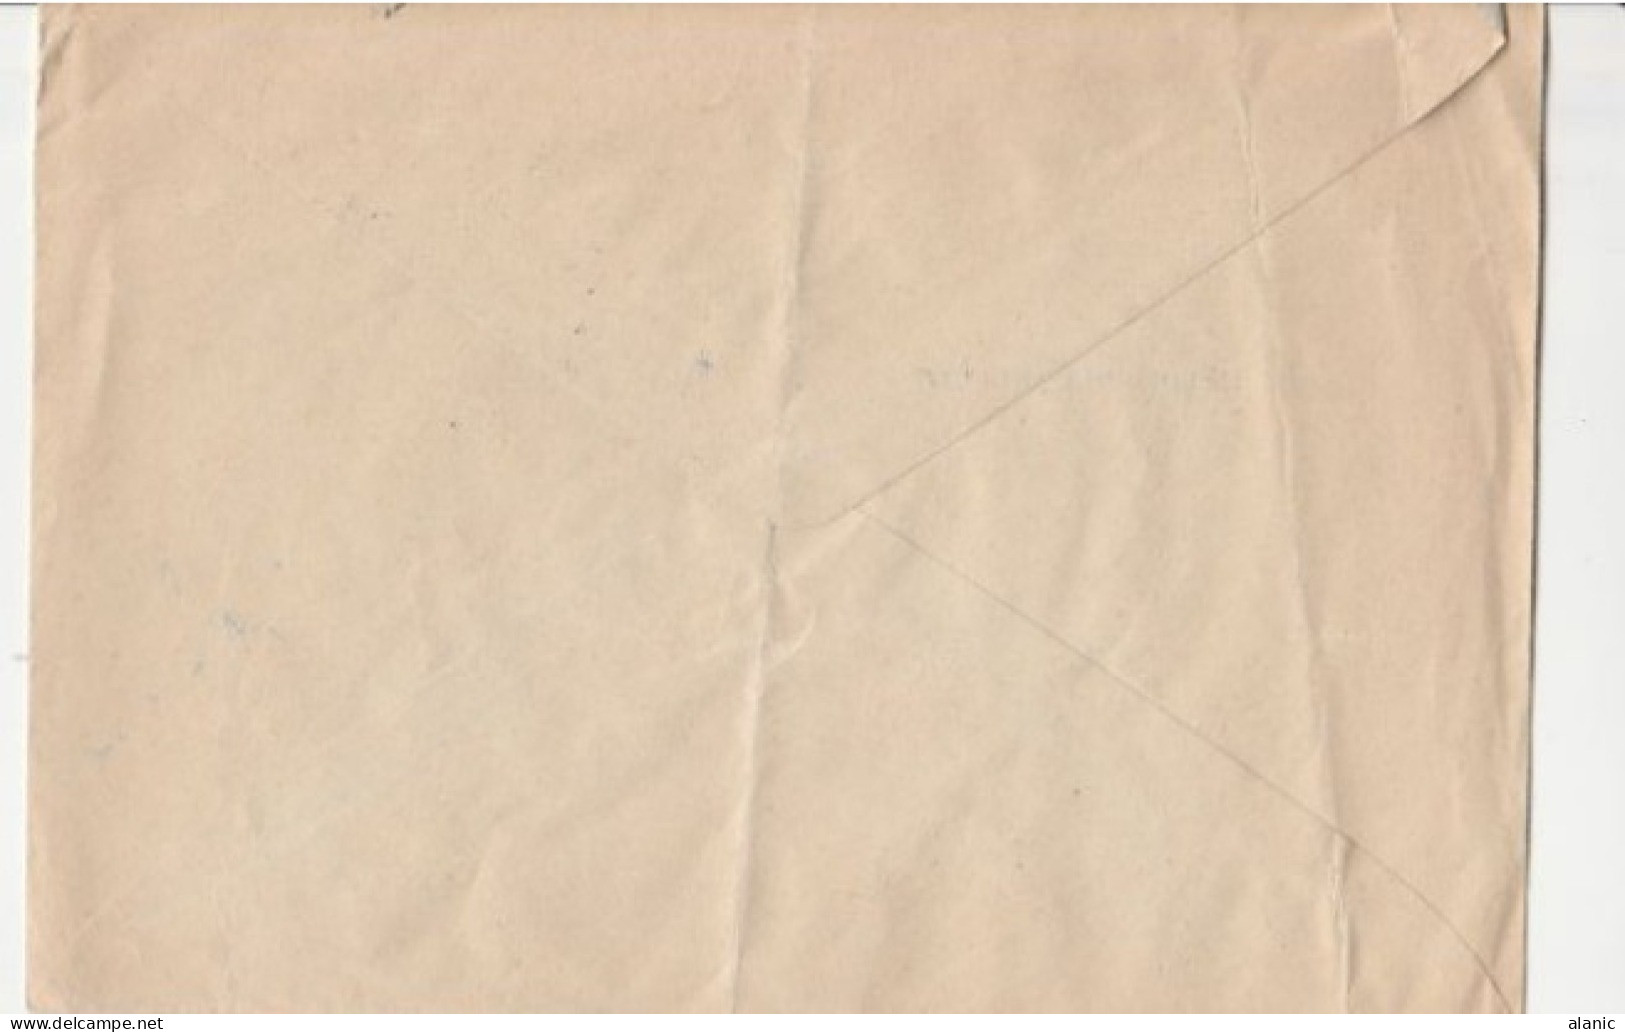 SARRE-Sur Enveloppe Commerciale 1954-N°258+310 De SAARBRUCKEN - Cartas & Documentos